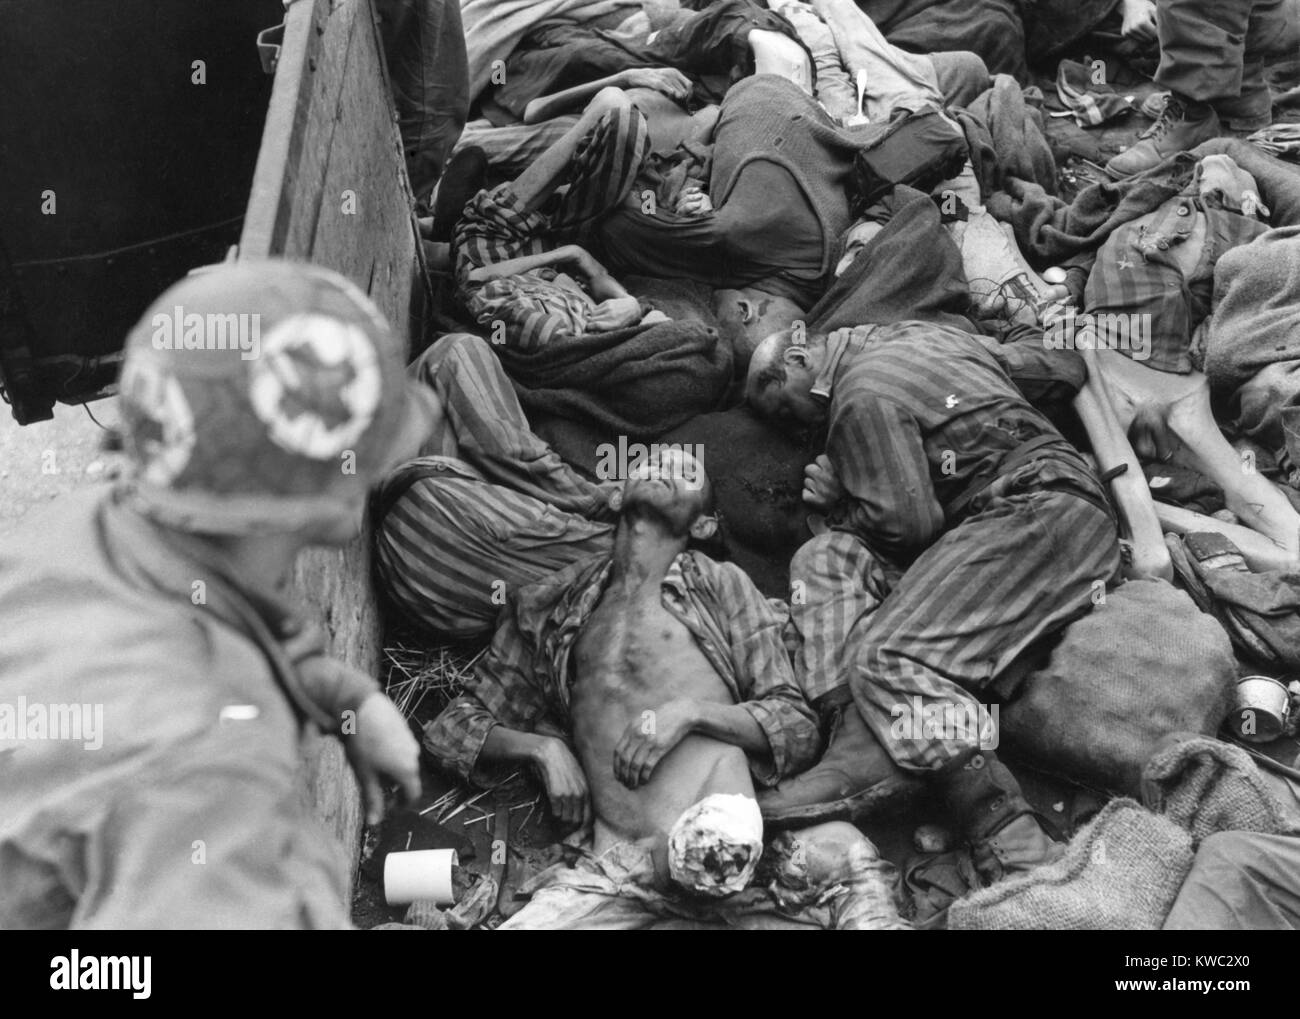 Séptimo US Army Medical ayudante médico mira dentro de vagón de tren lleno de muertos o prisioneros hambriento. Como la Alemania nazi se derrumbó en marzo de 1945, los guardias de las SS enviaron estos órganos a Dachau para cremación. Muchos de los guardias de las SS nazis abandonaron el campamento al ejército estadounidense se acercó en abril de 1945. Guerra Mundial 2 (BSLOC 2015 13 13) Foto de stock